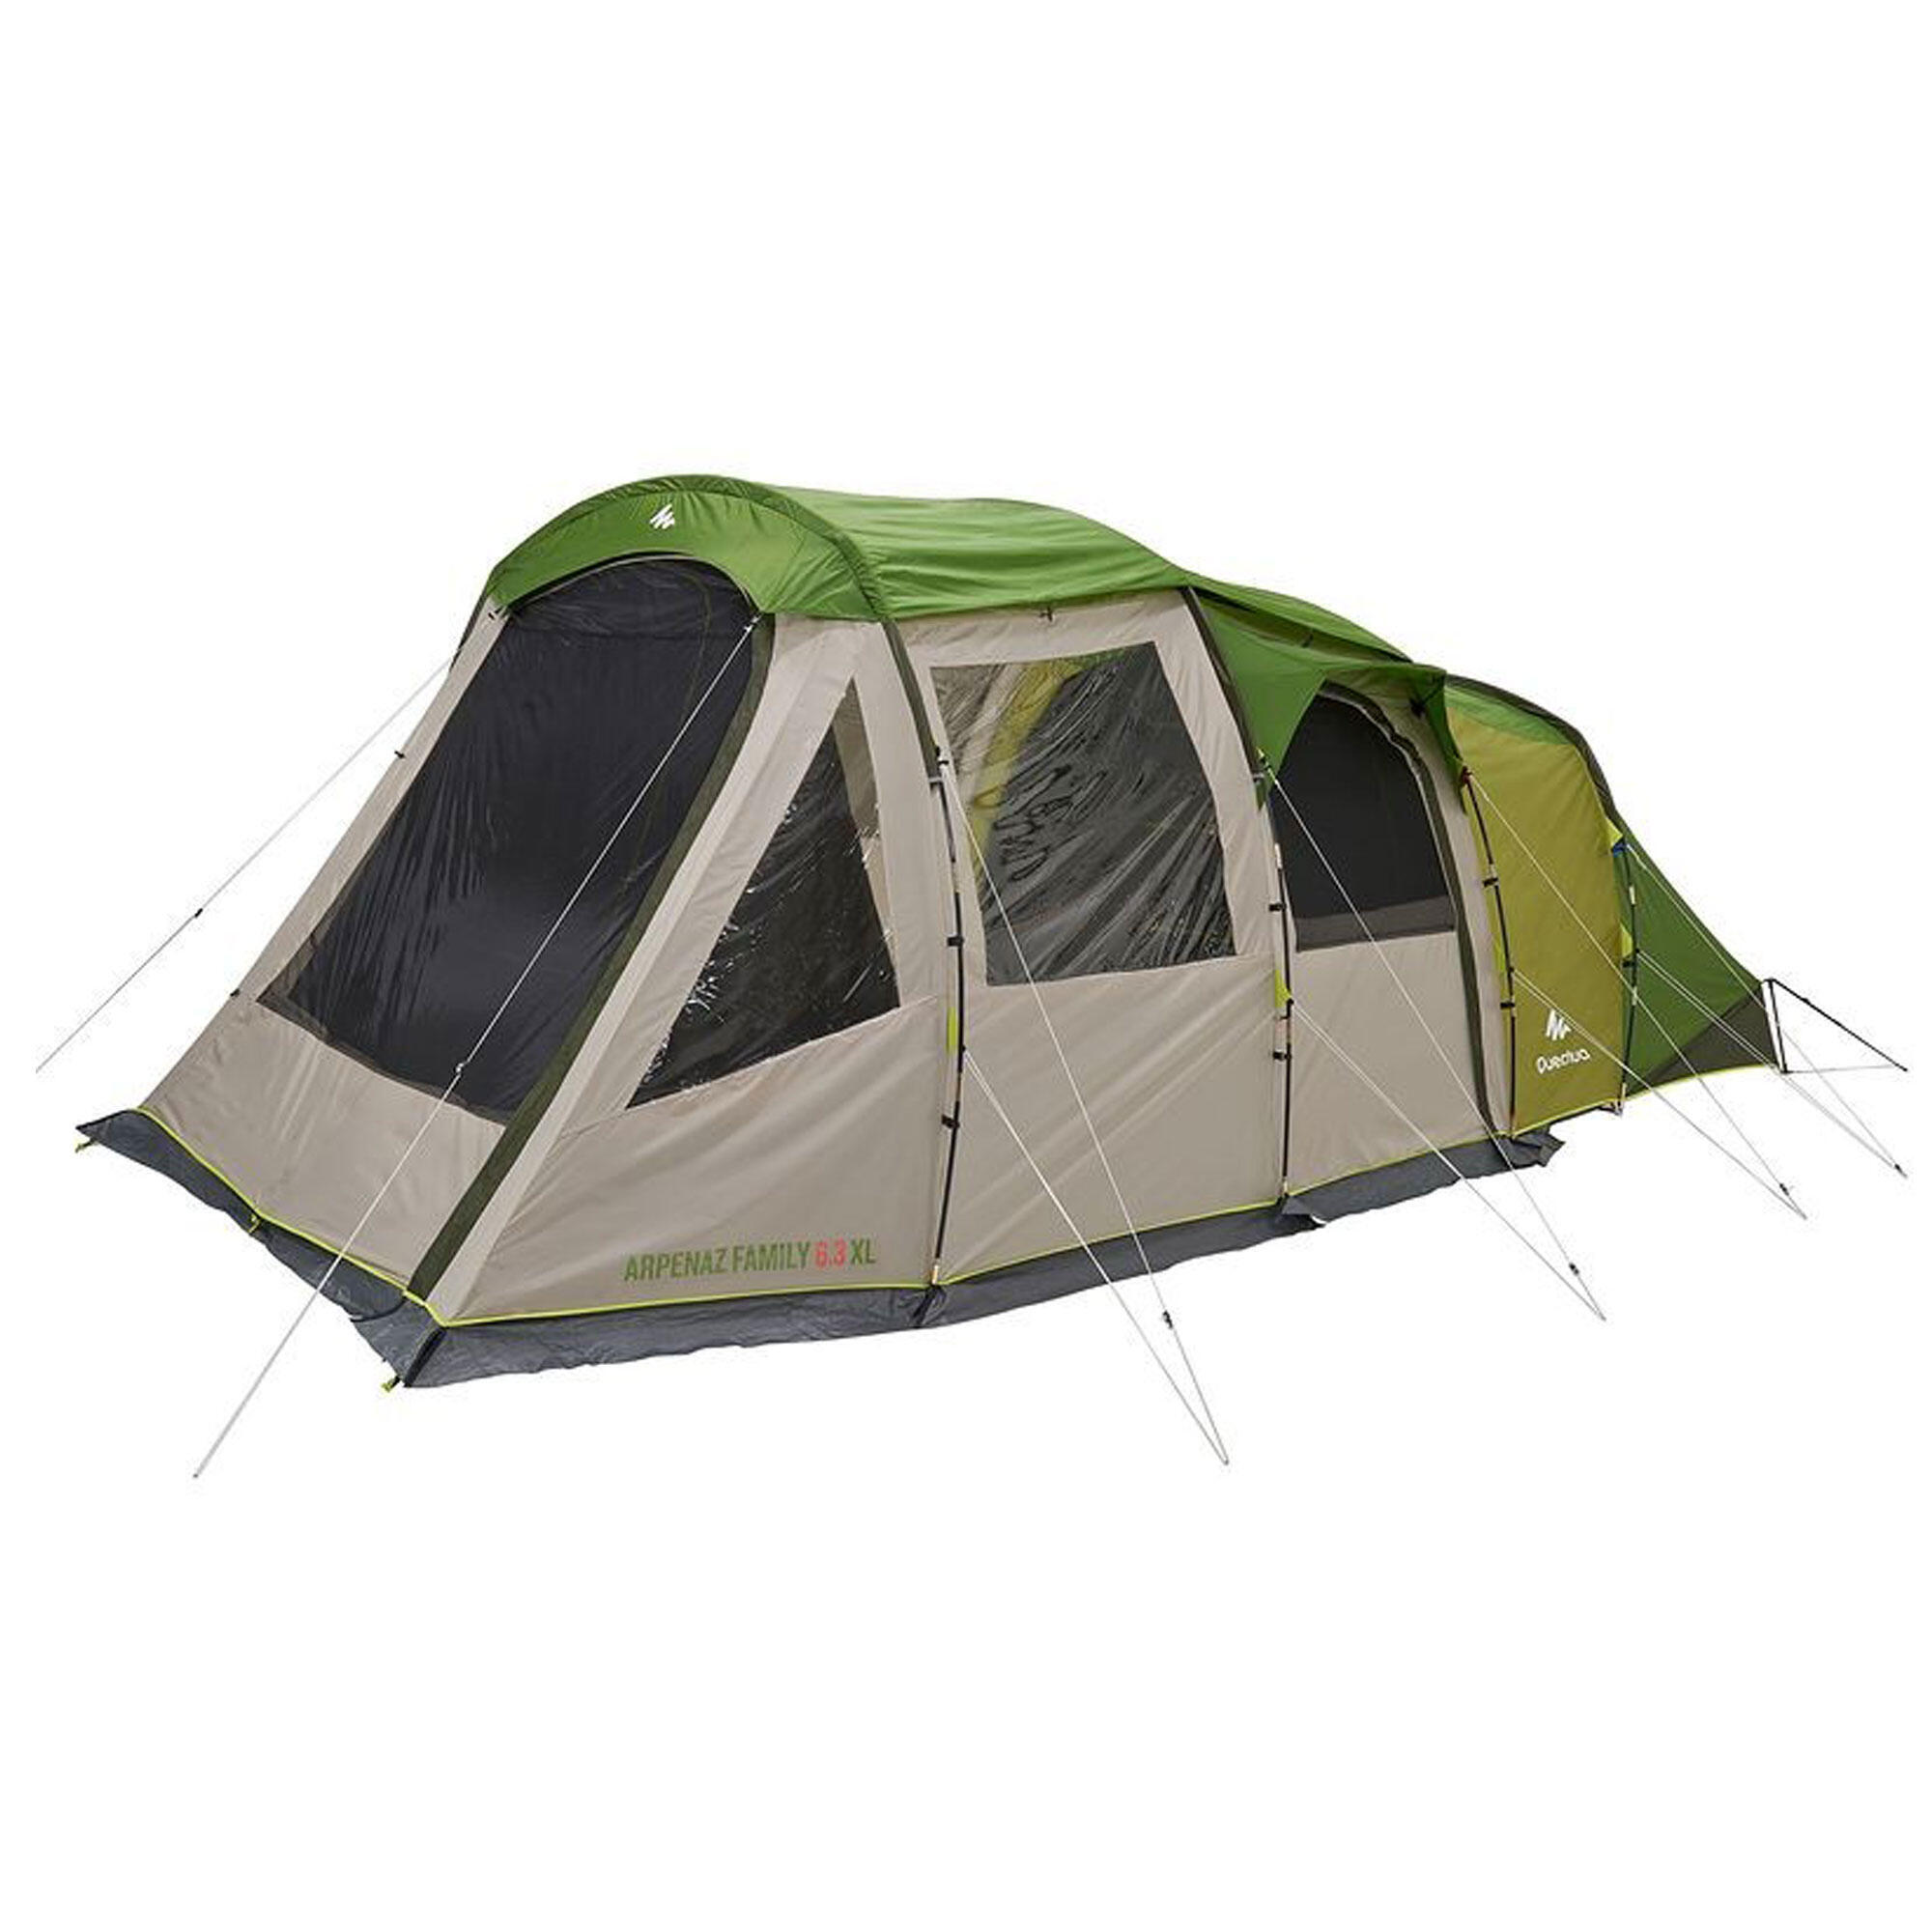 цена Внешняя палатка Quechua Arpenaz Family 6.3 XL сменная